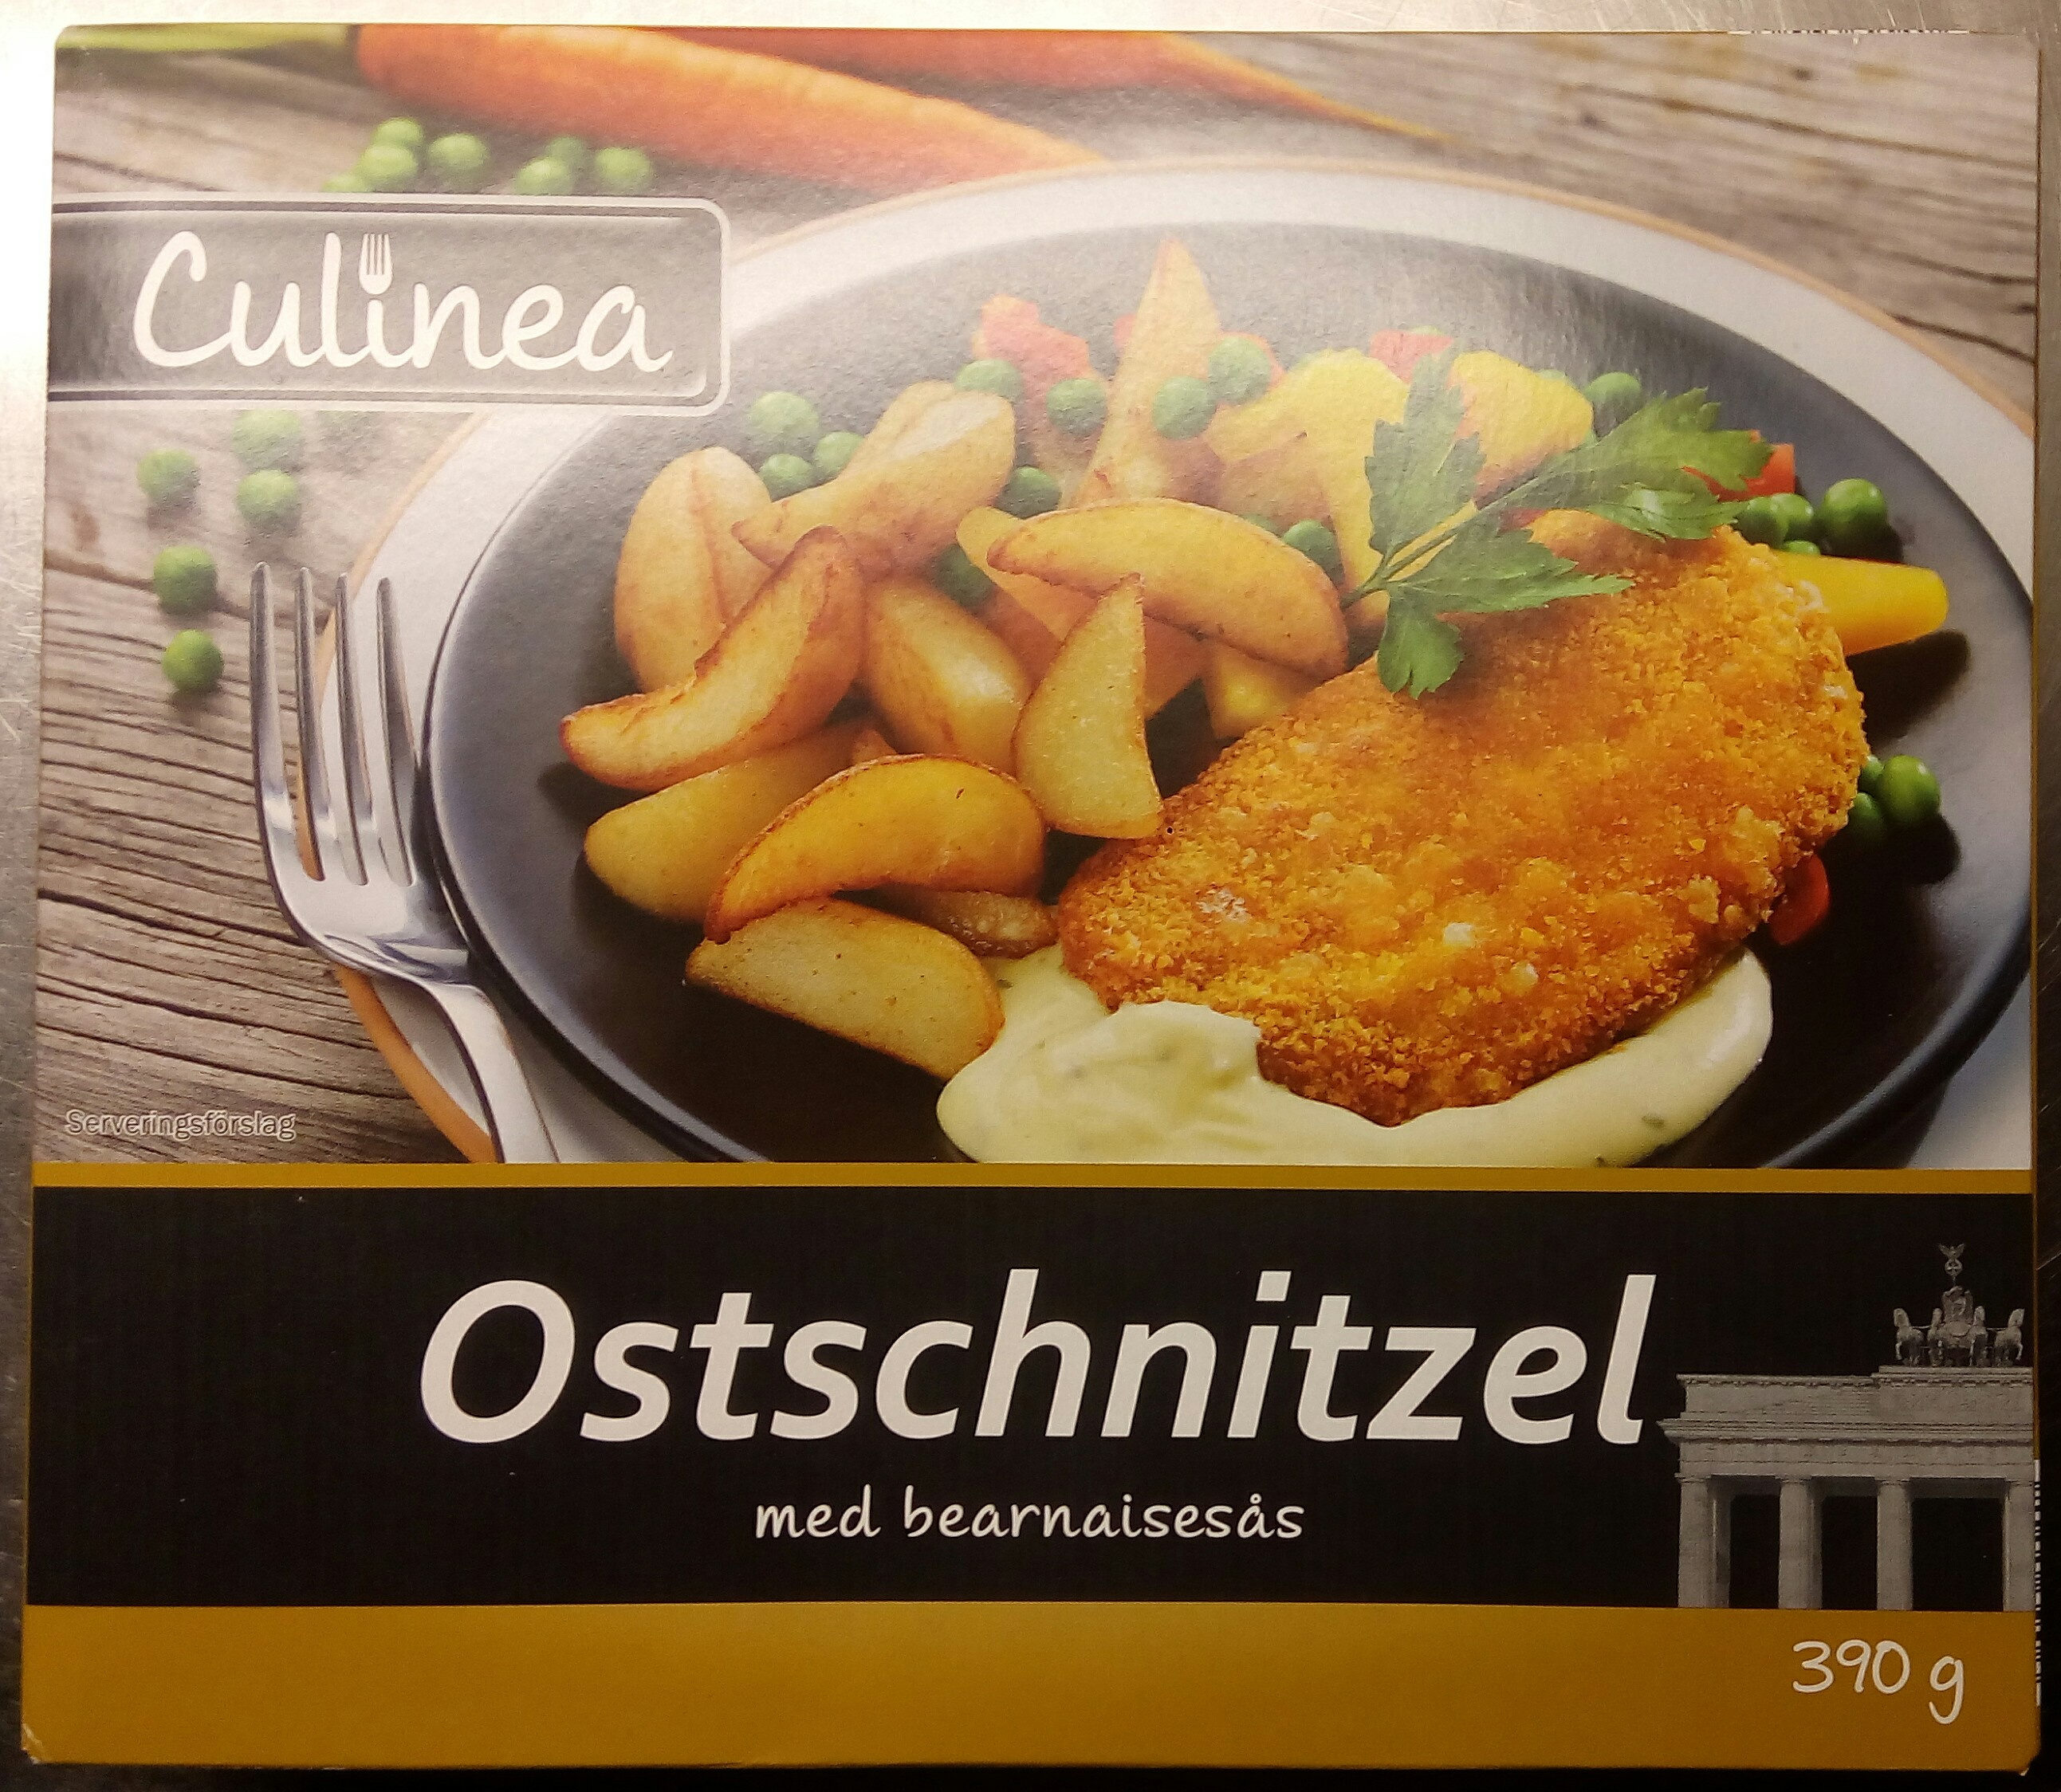 Culinea Ostschnitzel med bearnaisesås - Produkt